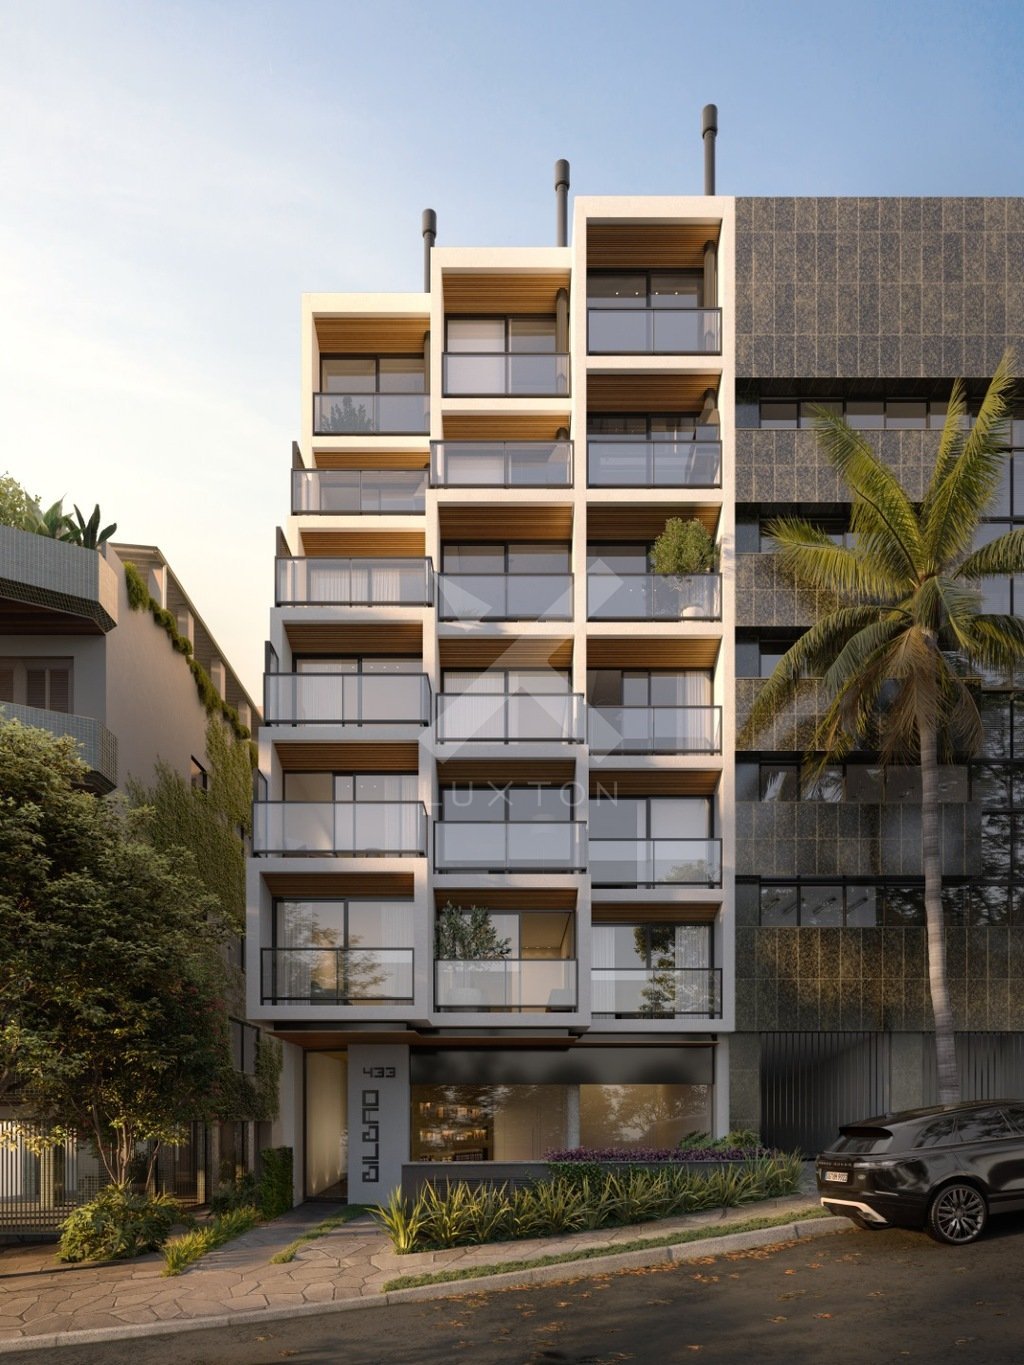 Cobertura com 56m², 1 dormitório, 1 suíte, no bairro Rio Branco em Porto Alegre para Comprar